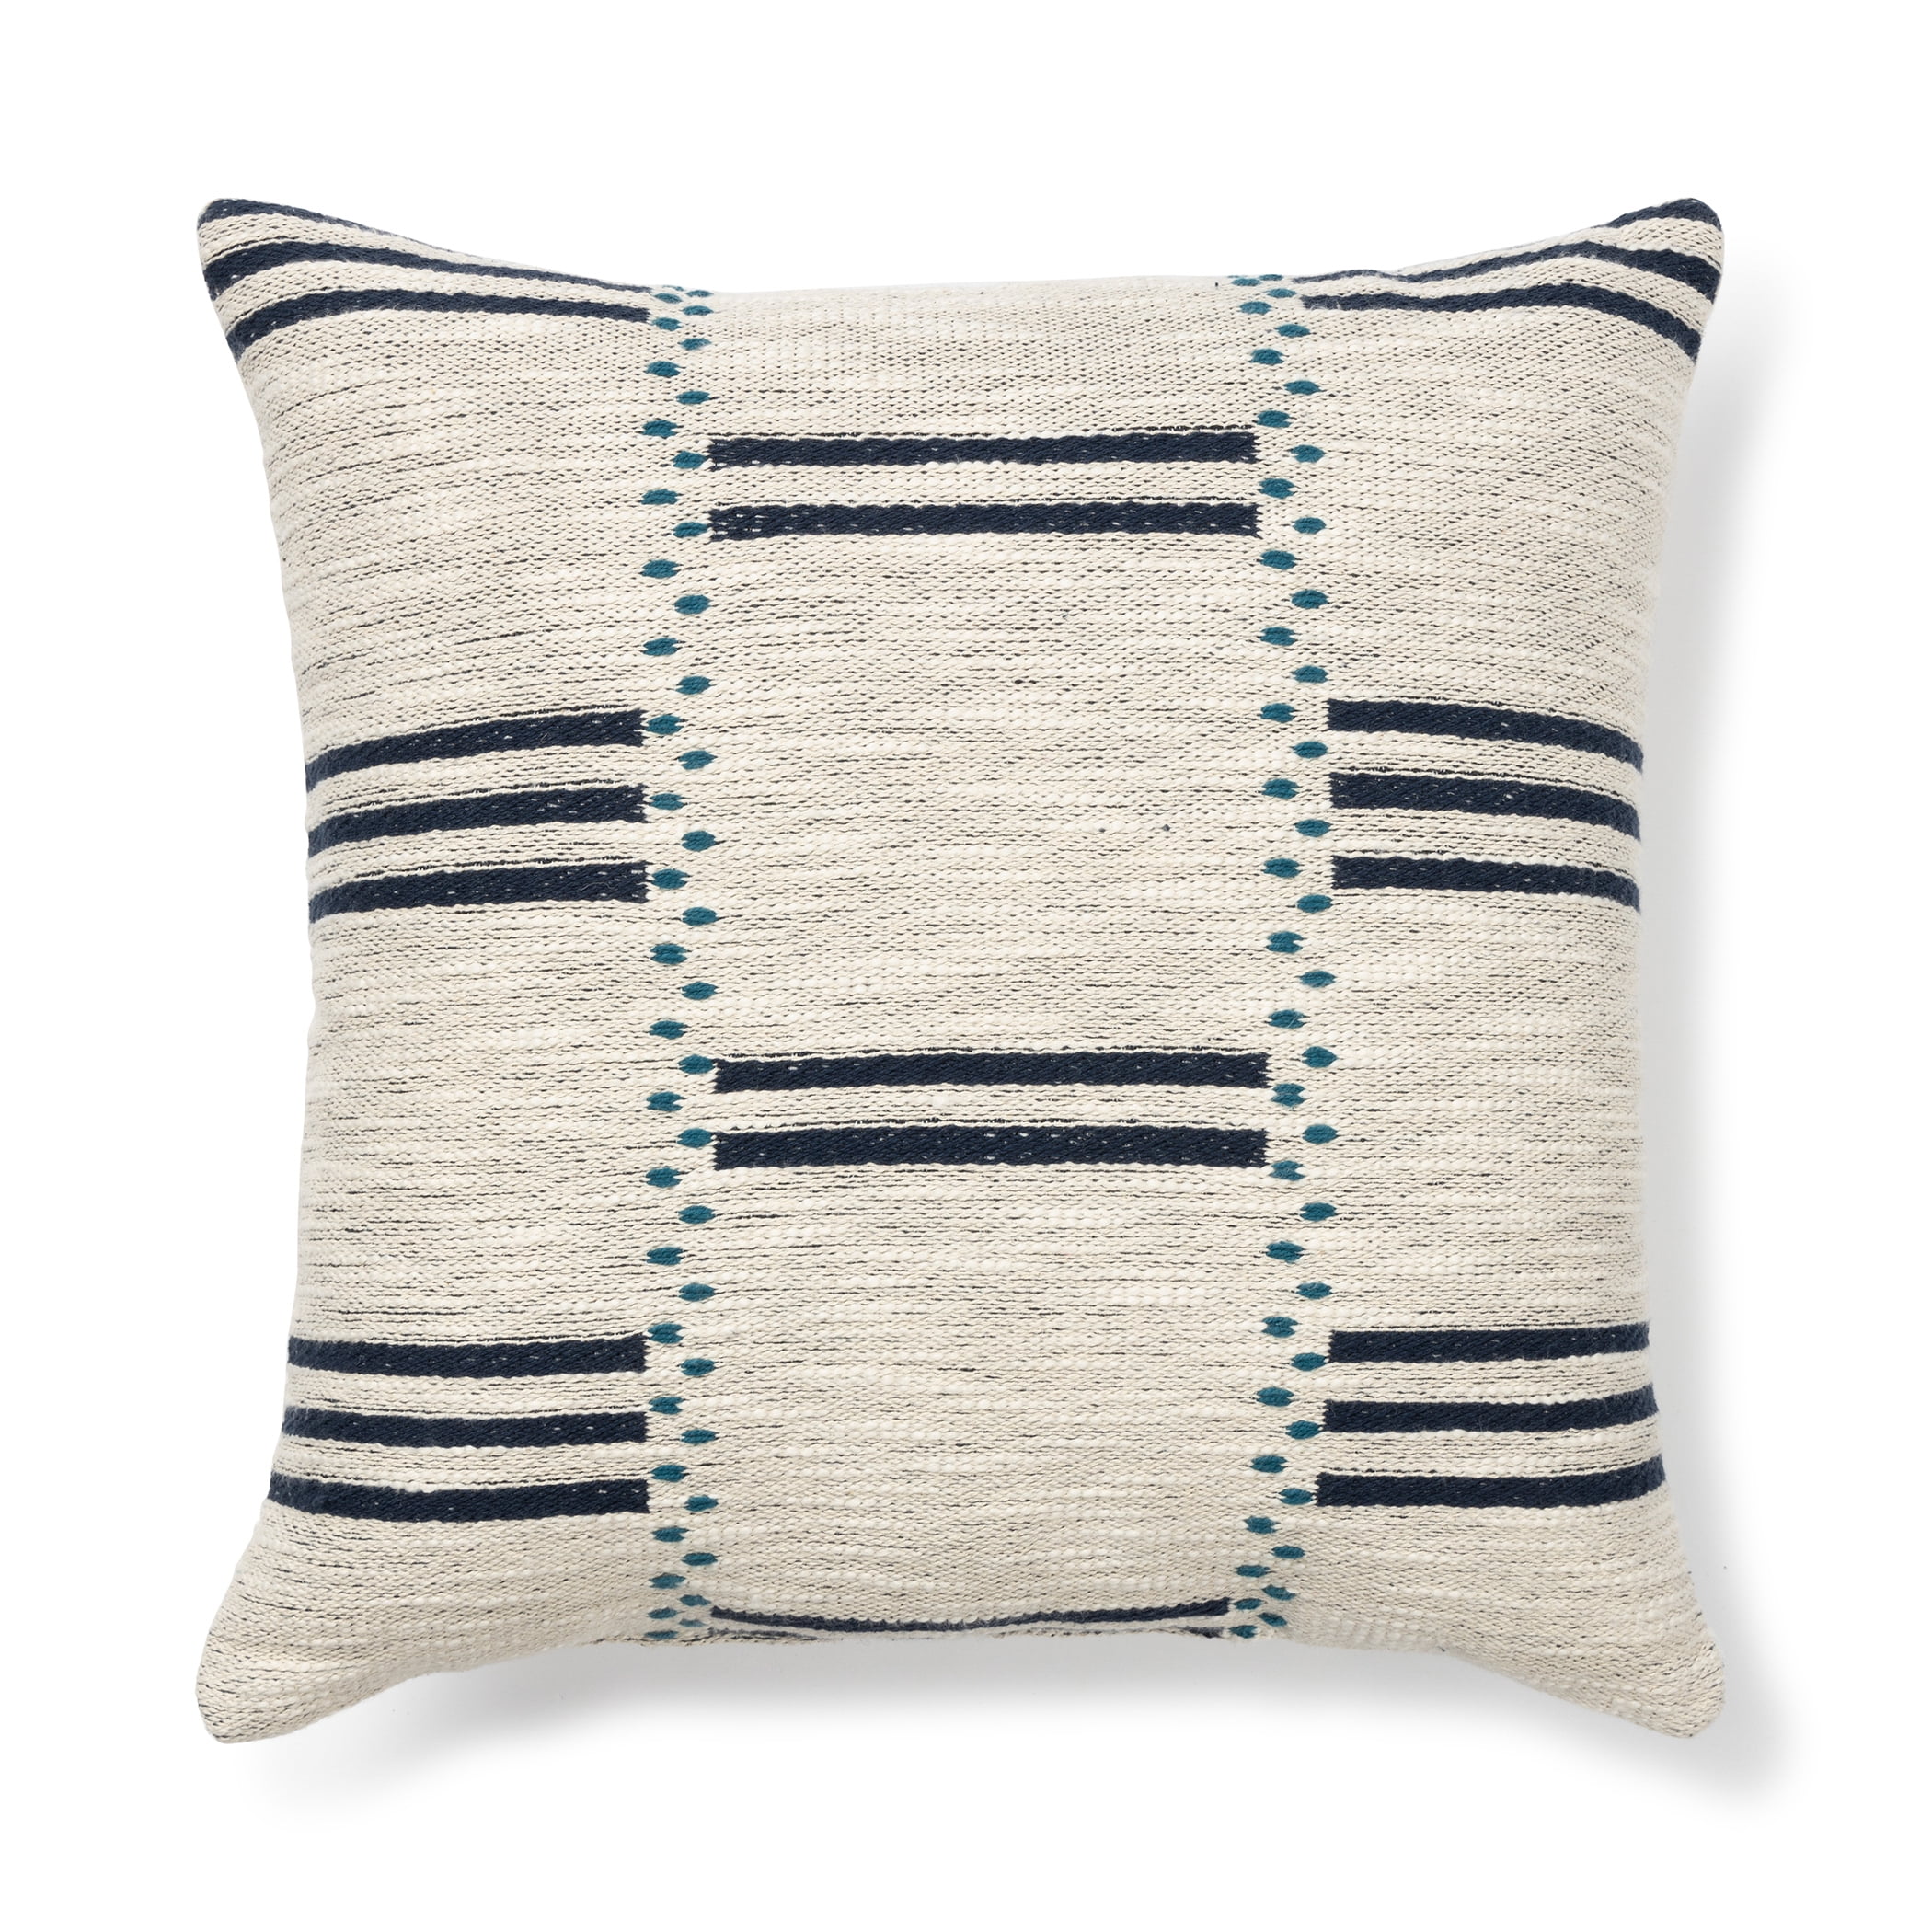 Chenille Velvet Criss Cross Design Check 17 x 17 Cushion Covers for Sofa Bed 